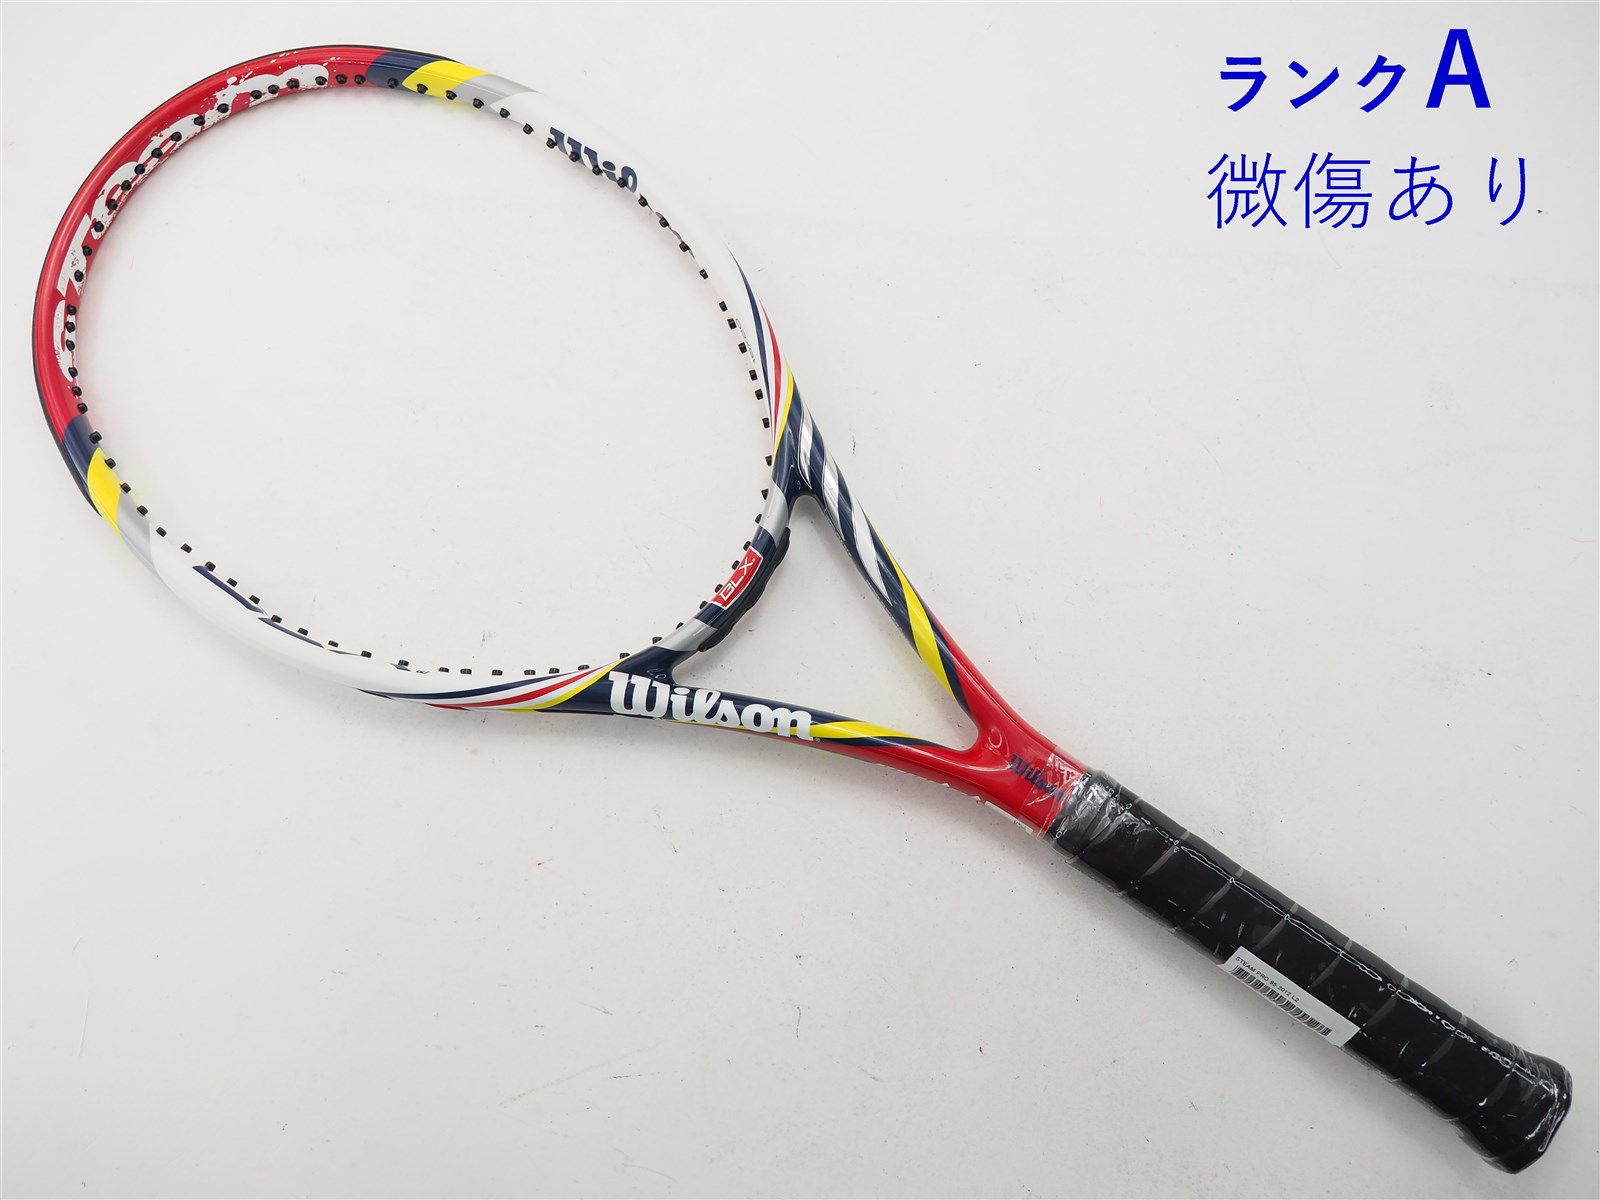 テニスラケット ウィルソン スティーム 95 2012年モデル (G2)WILSON STEAM 95 2012